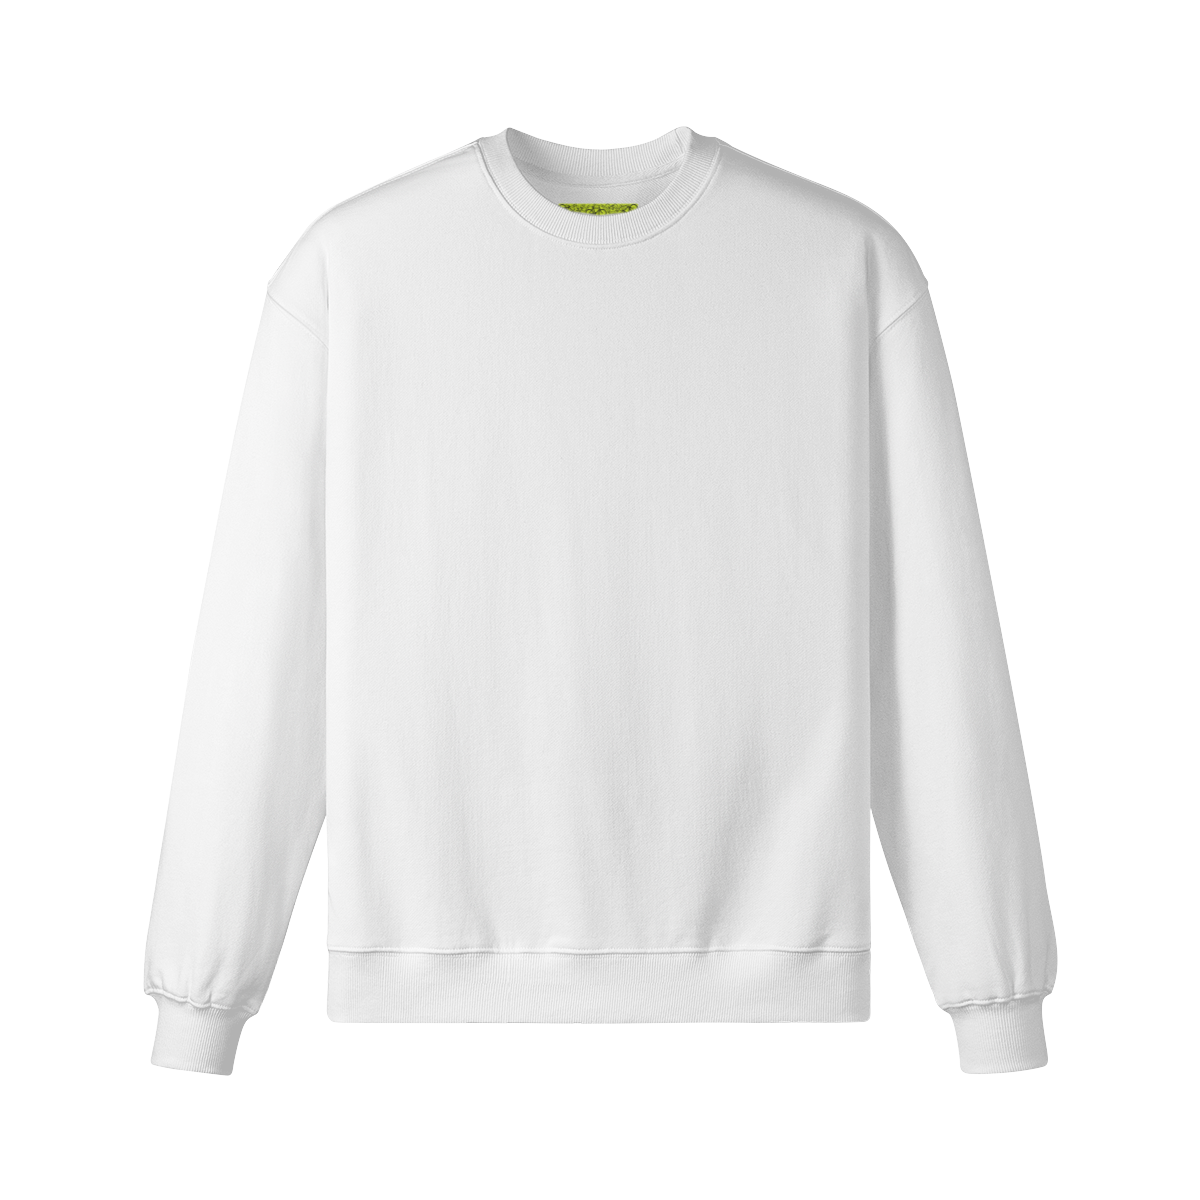 ANGRY TIKI (BACK PRINT) - Unisex Oversized Sweatshirt - Front - White